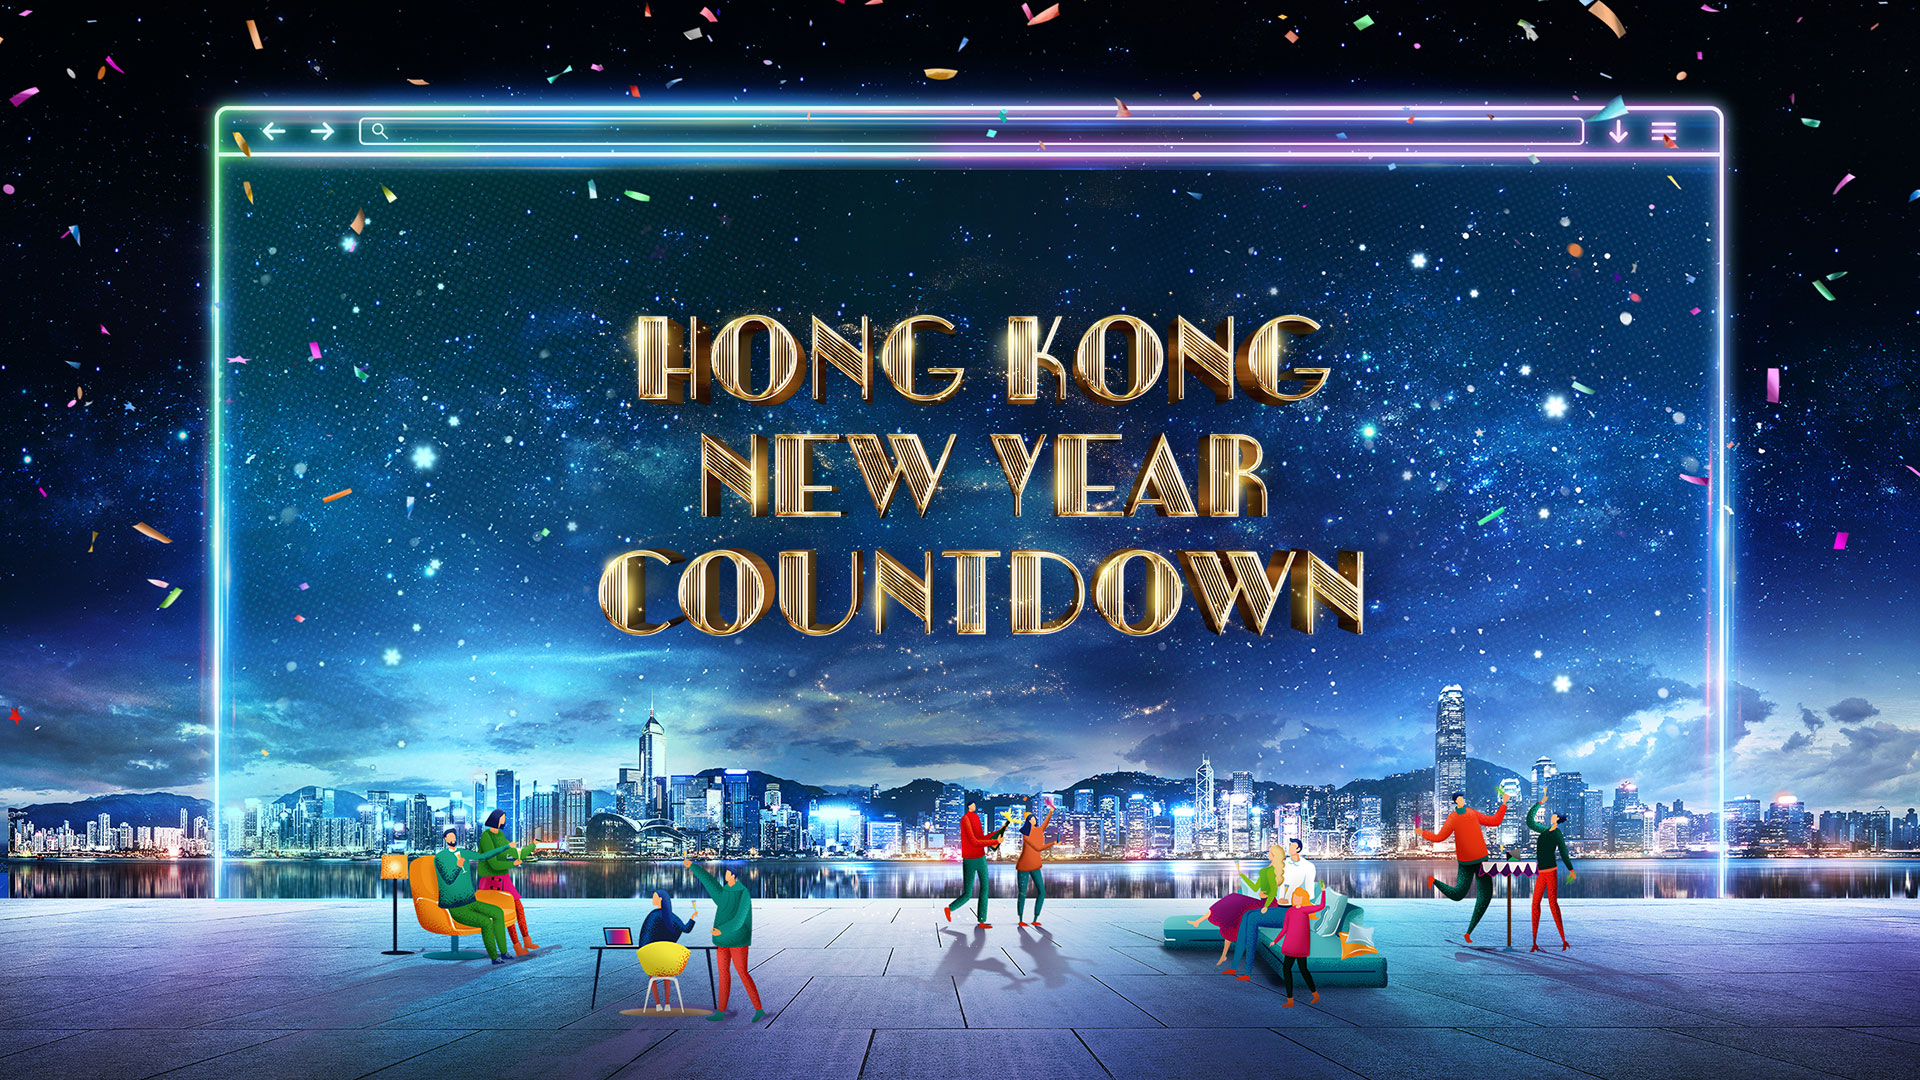 hk tourism board countdown